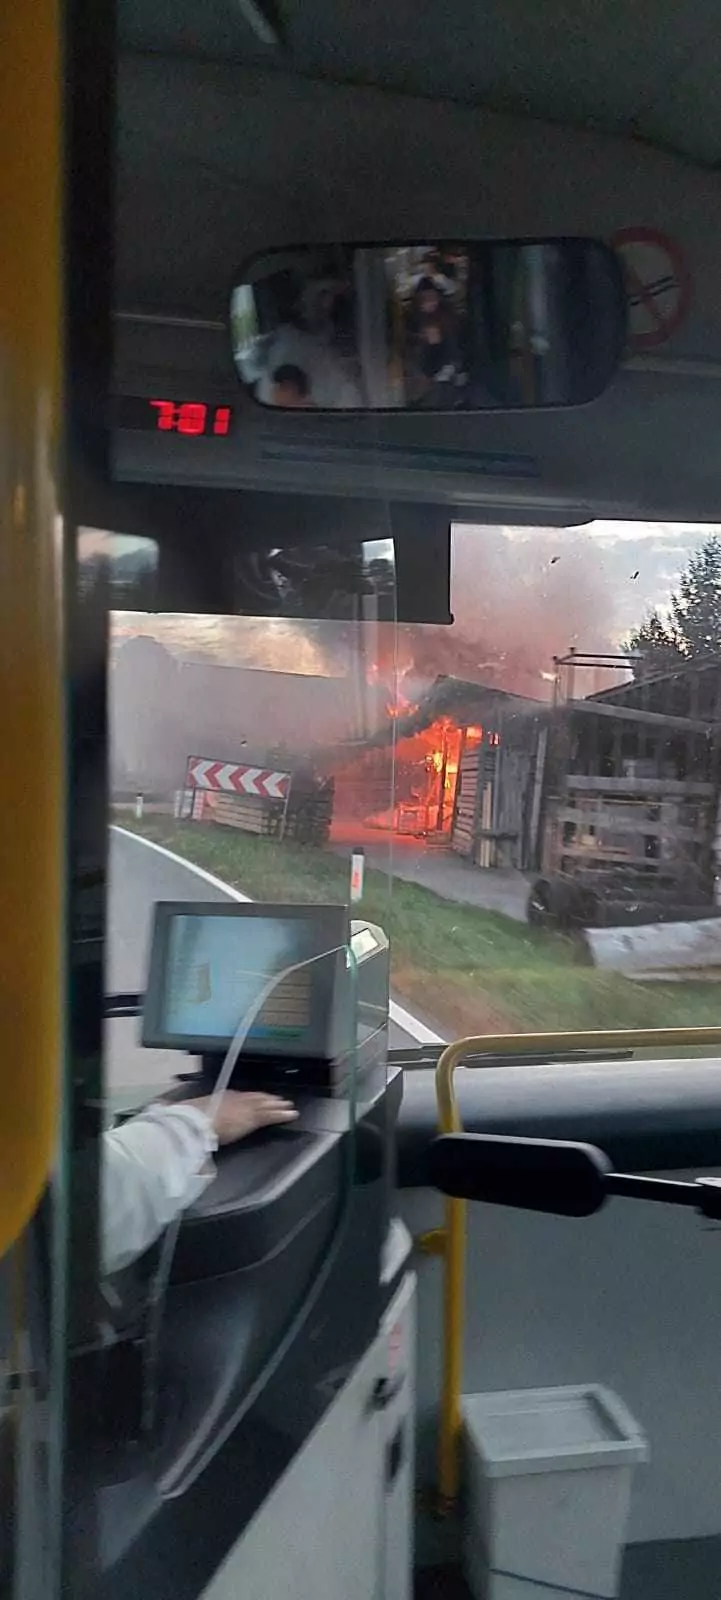 Bild in Artikel von 5min.at: Lagerhallenbrand aus dem Bus zu sehen. Man sieht Feuer und Rauch.